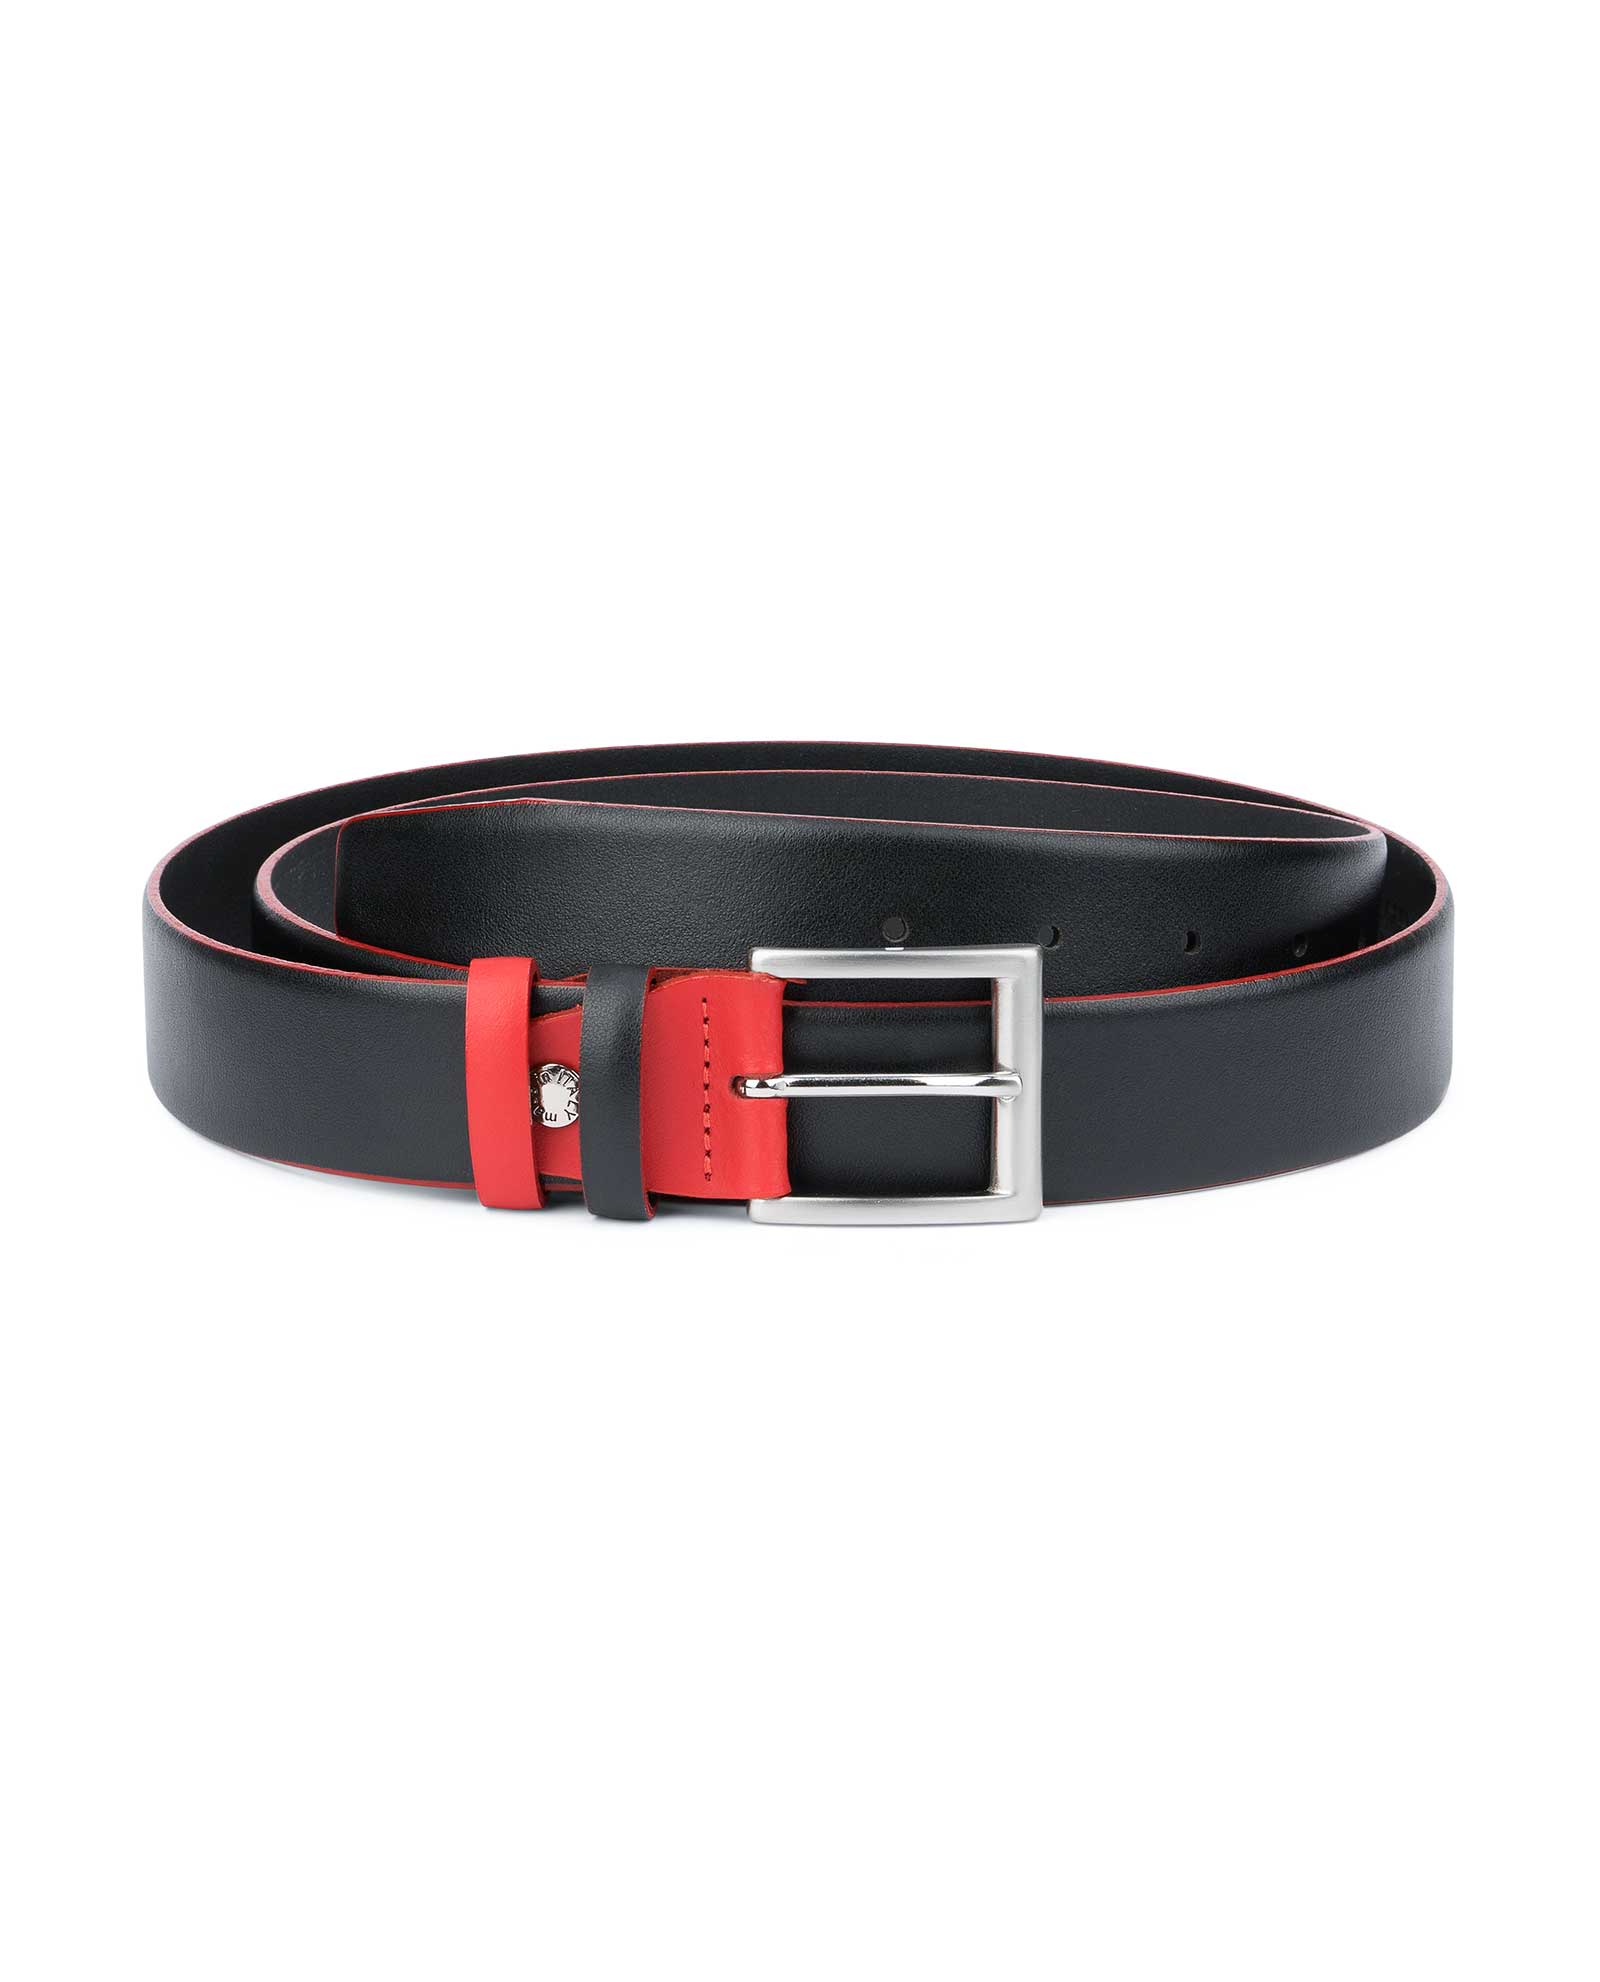 designer belt buckles for men